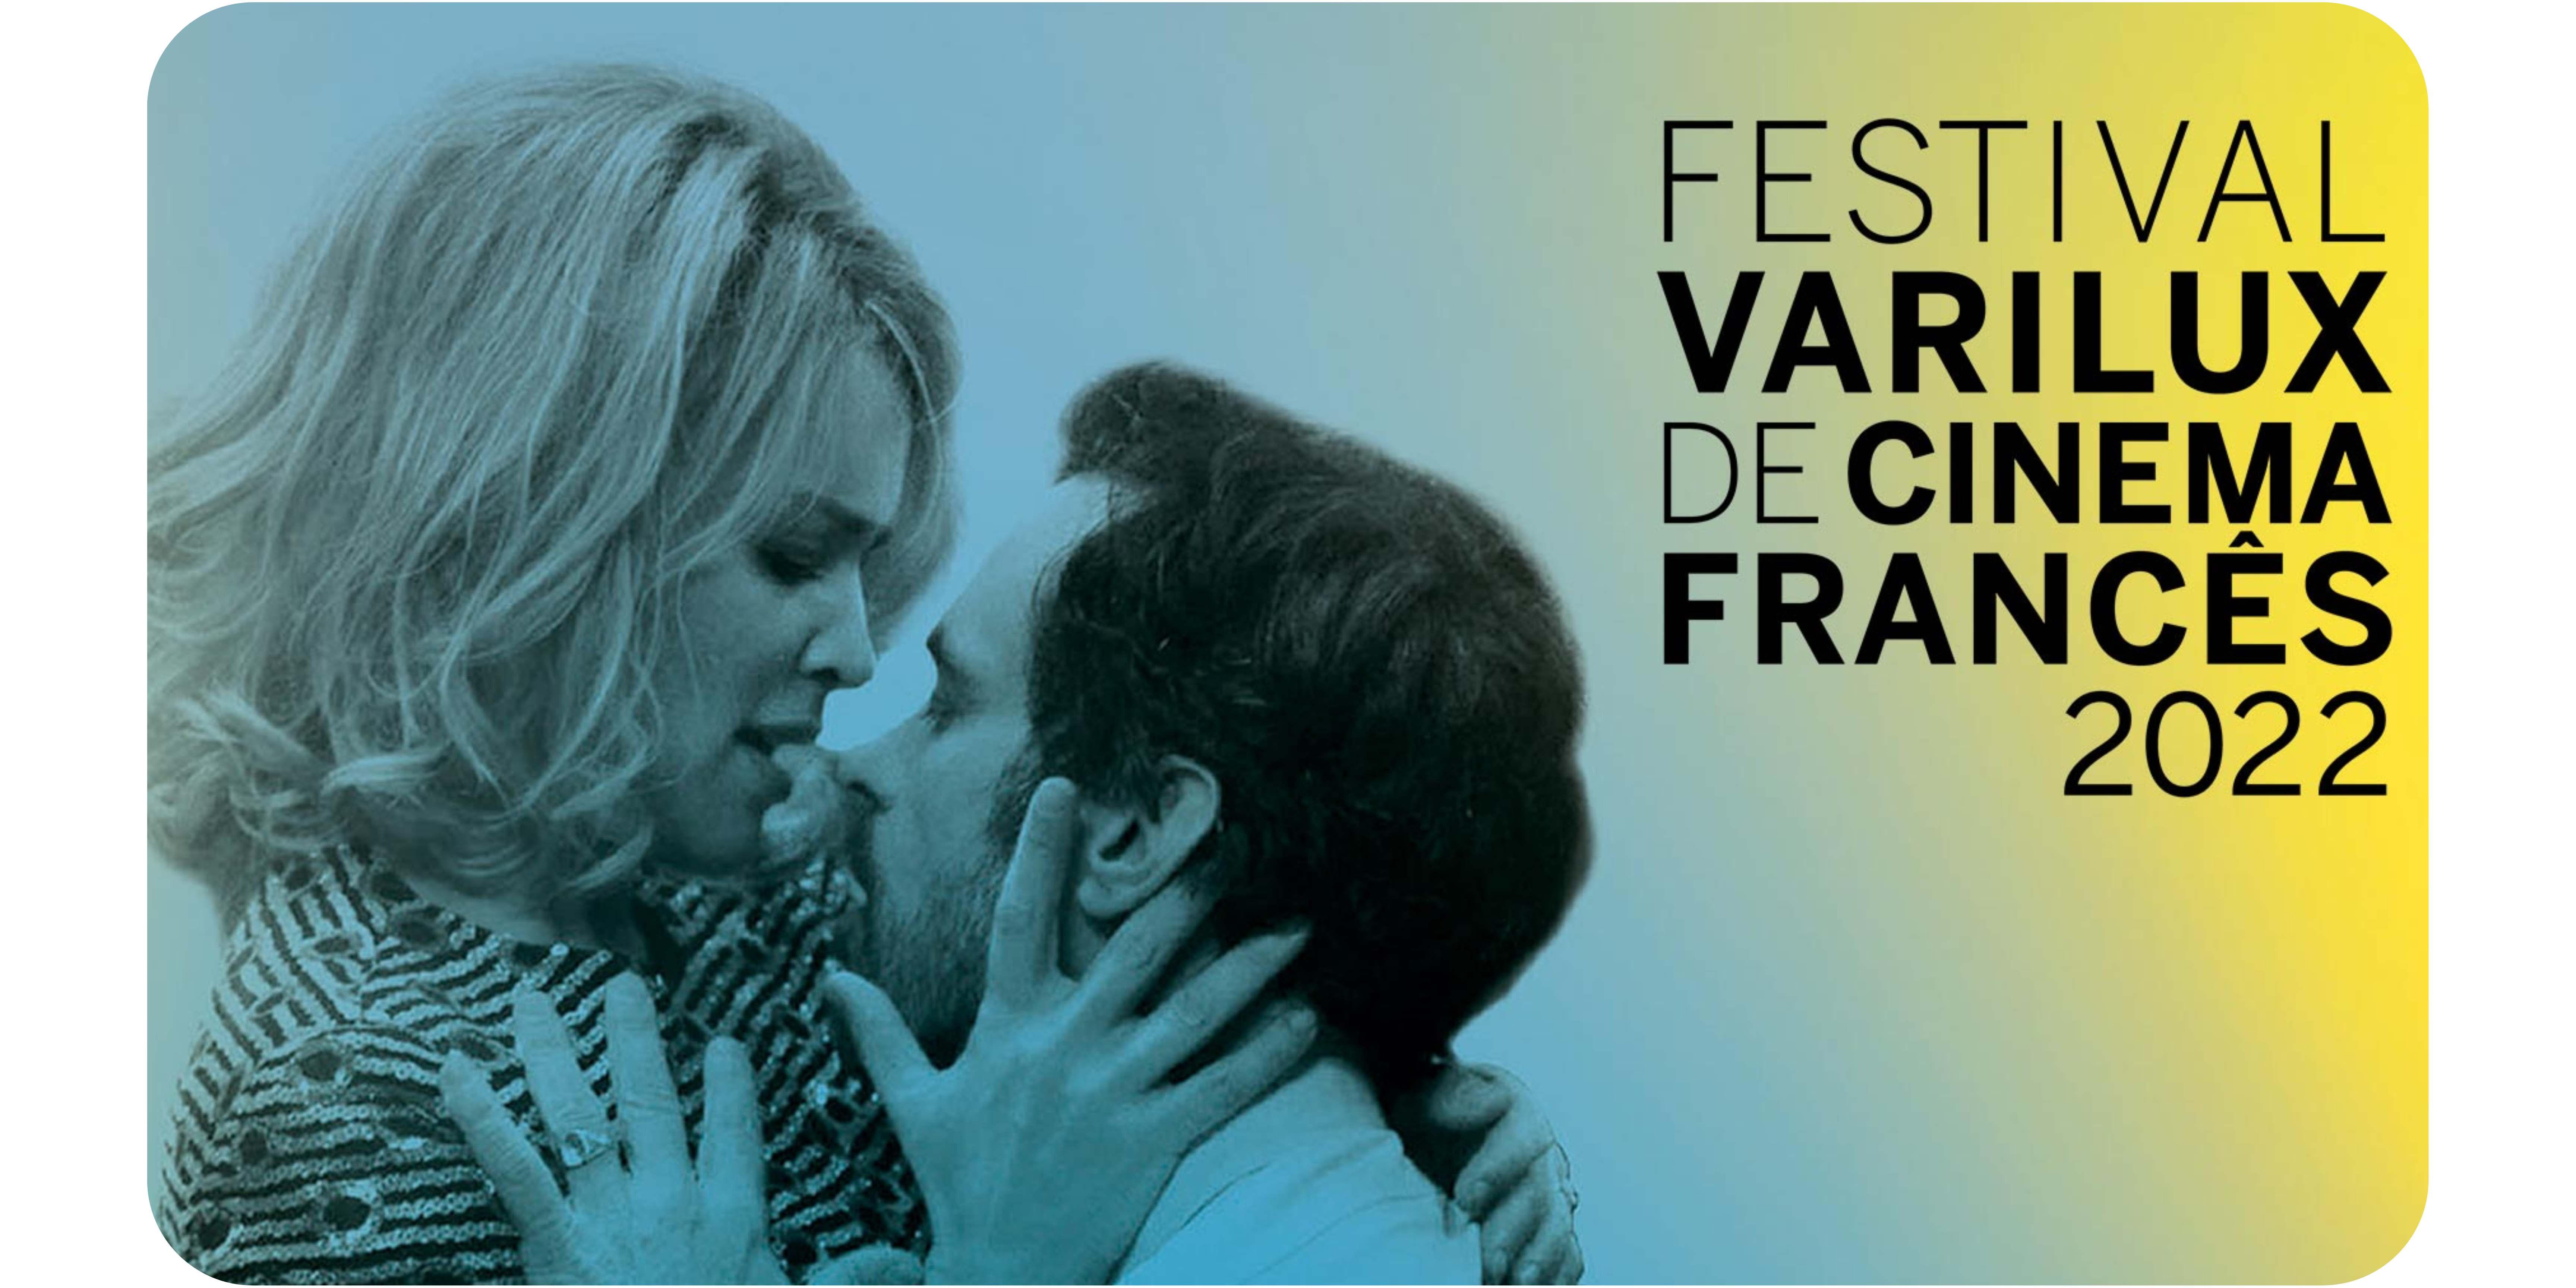 Pôster do Festival Varilux de Cinema Francês 2022, no qual um homem e uma mulher estão abraçados ao lado da logo do Festival.